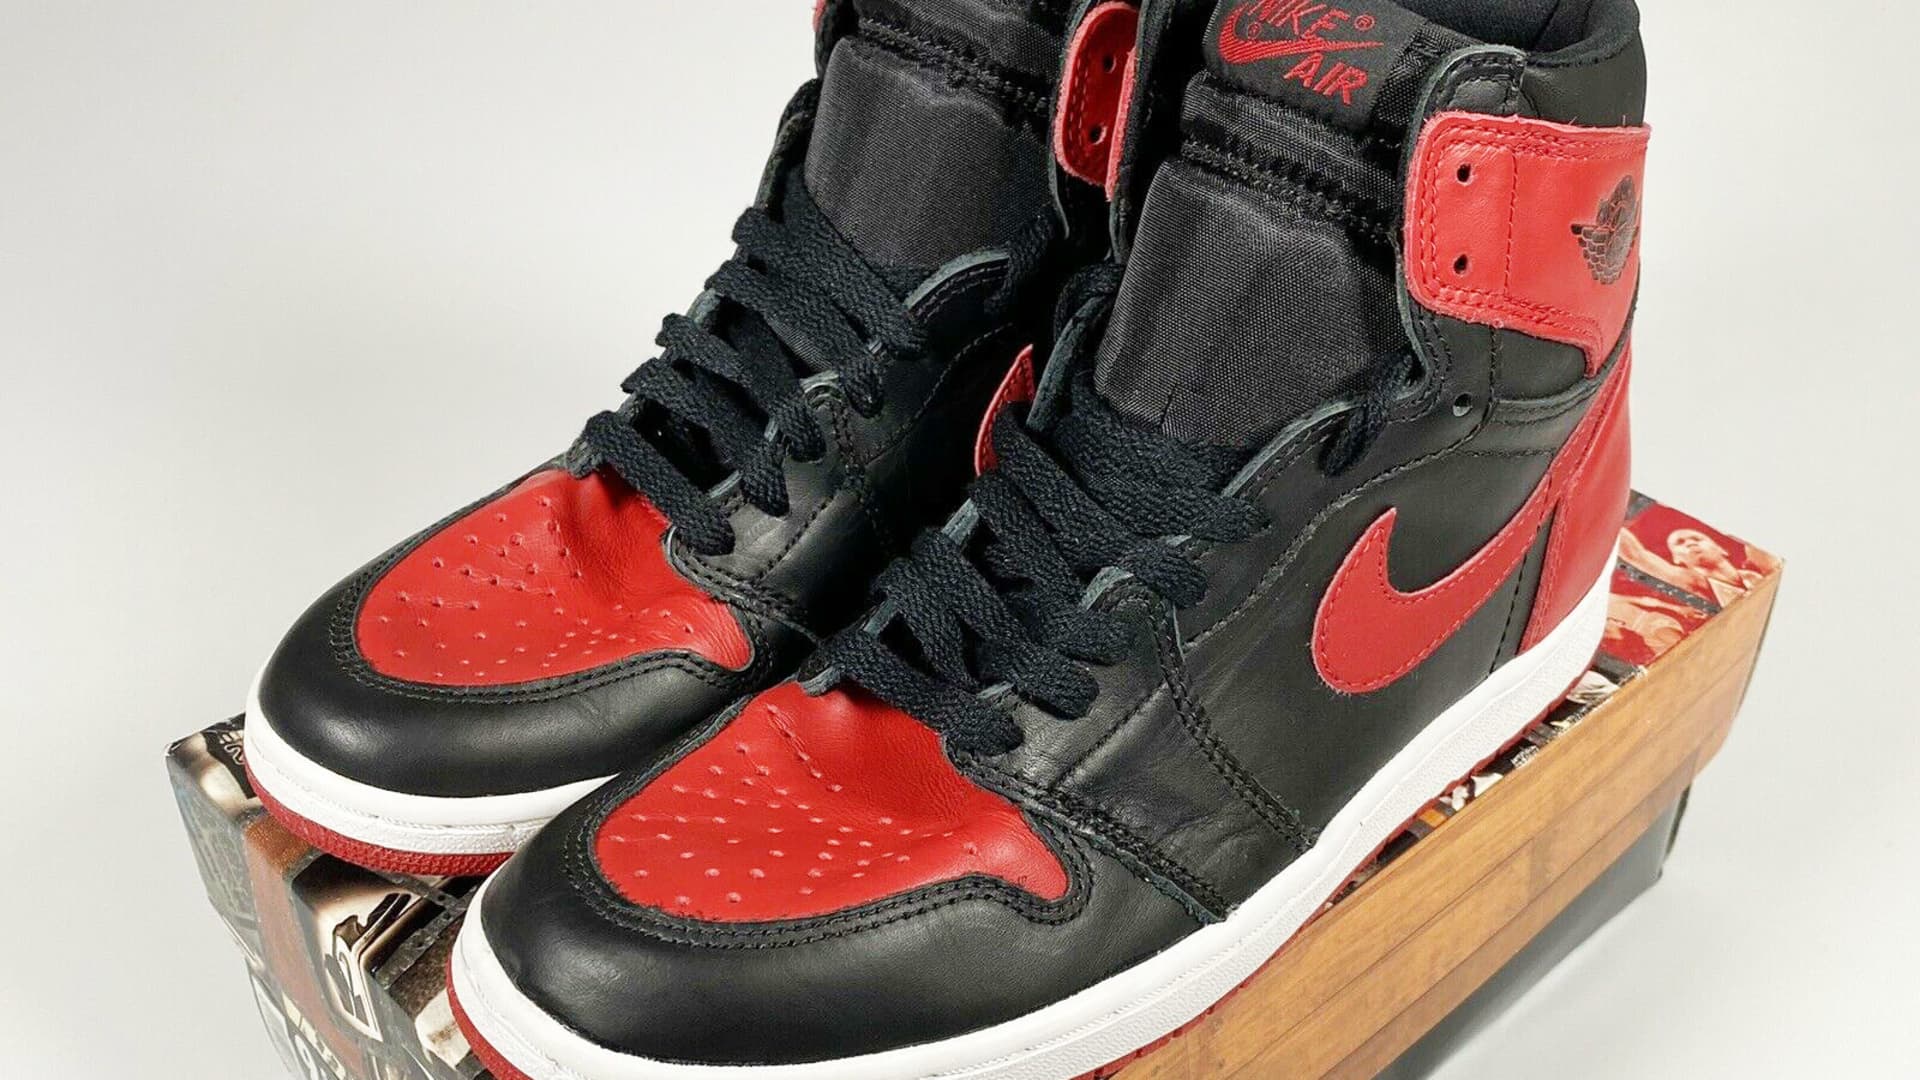 EBay touts of rare Air Jordan sneakers